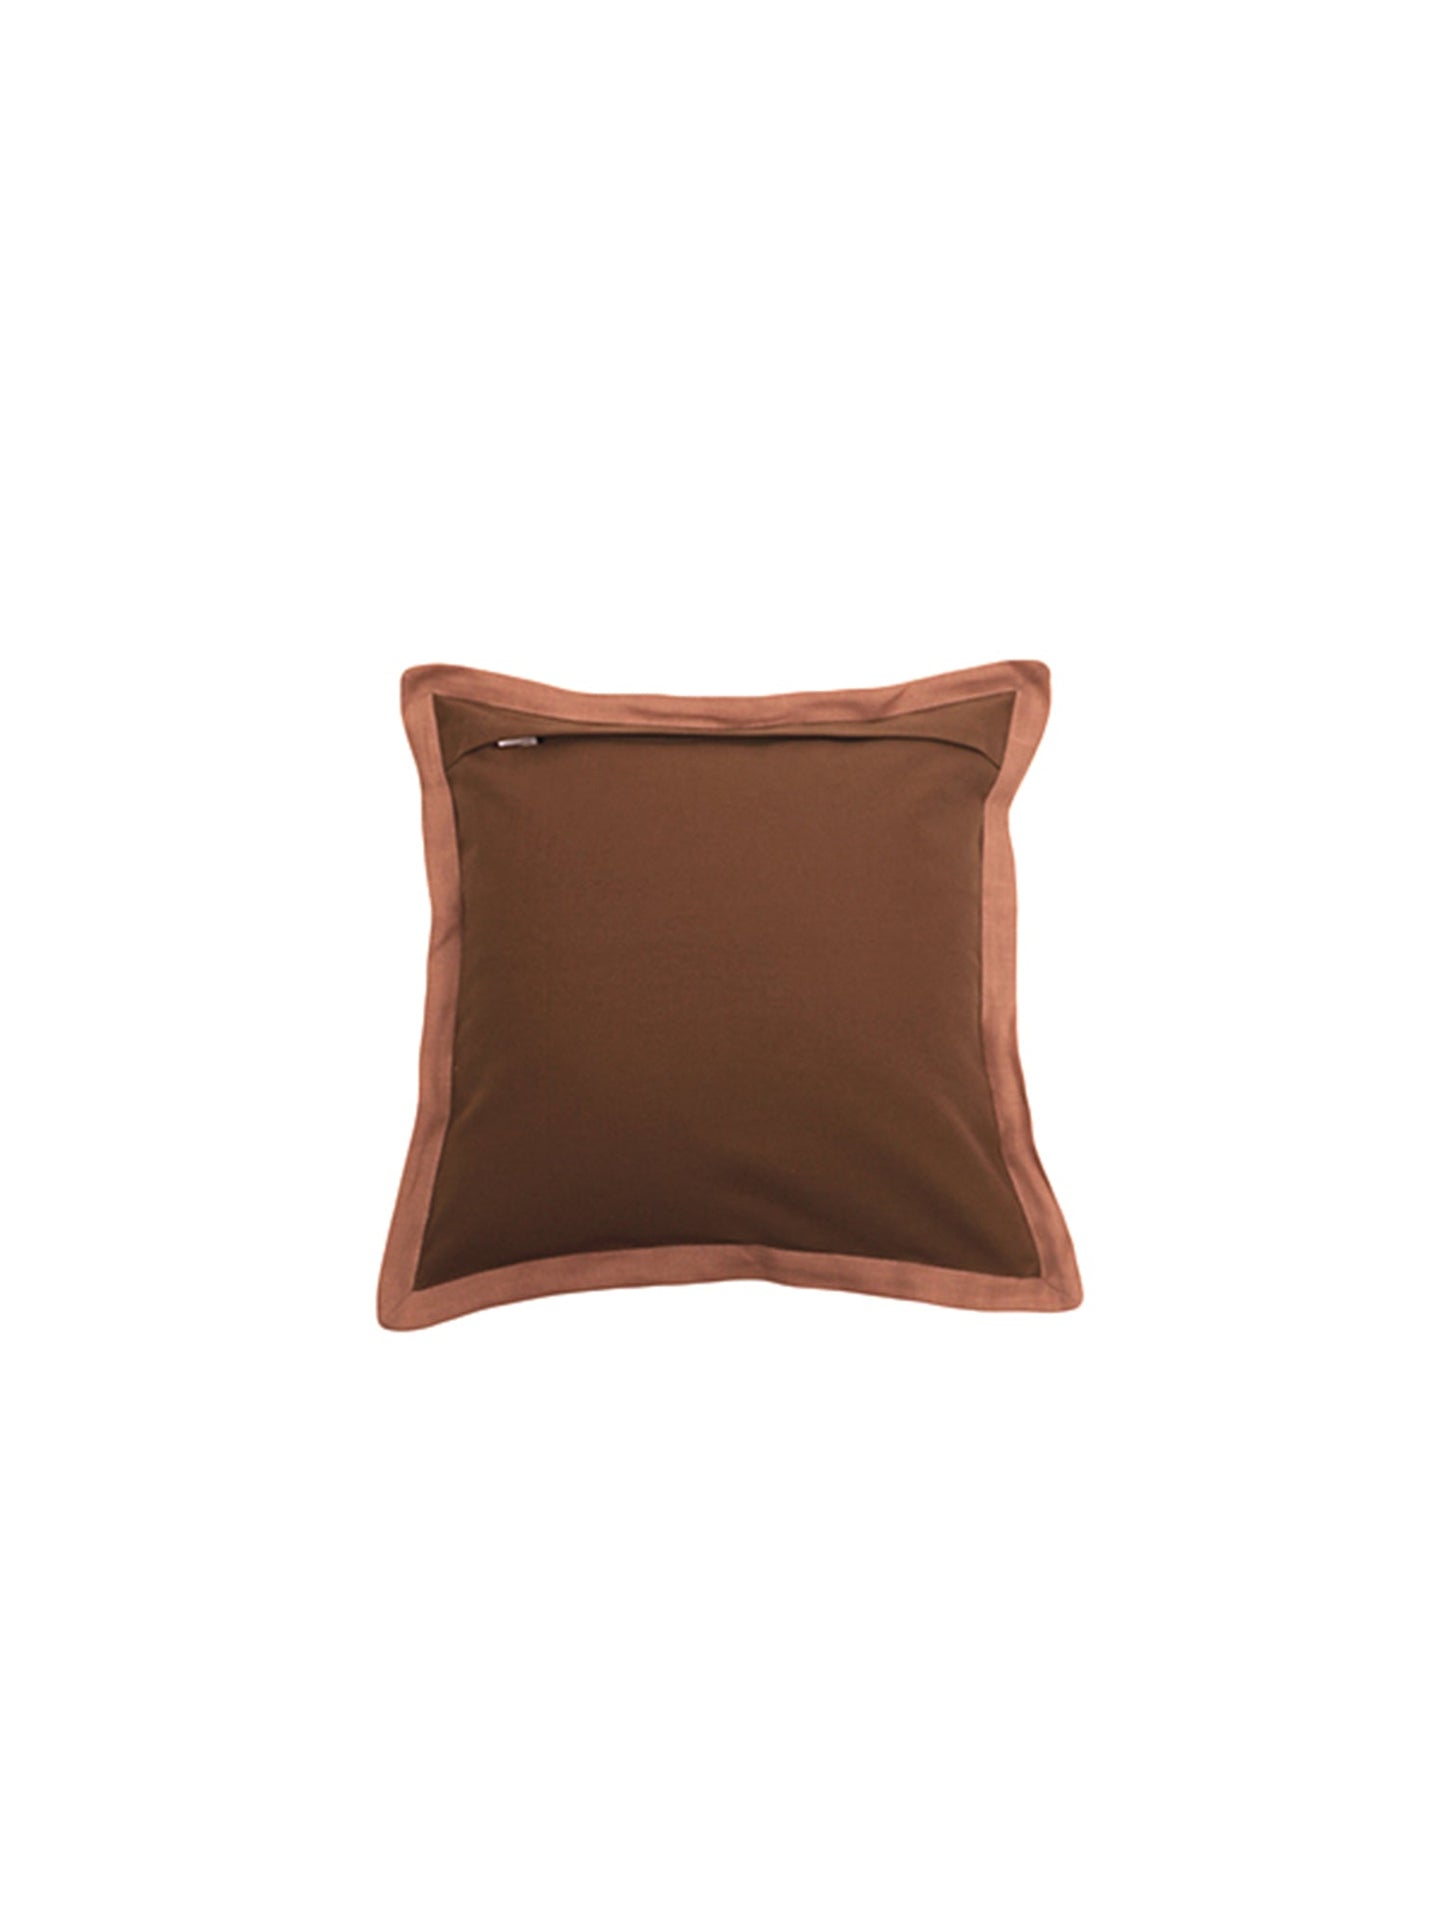 Cushion Cover Cotton Blend  Brown - 16" X 16"